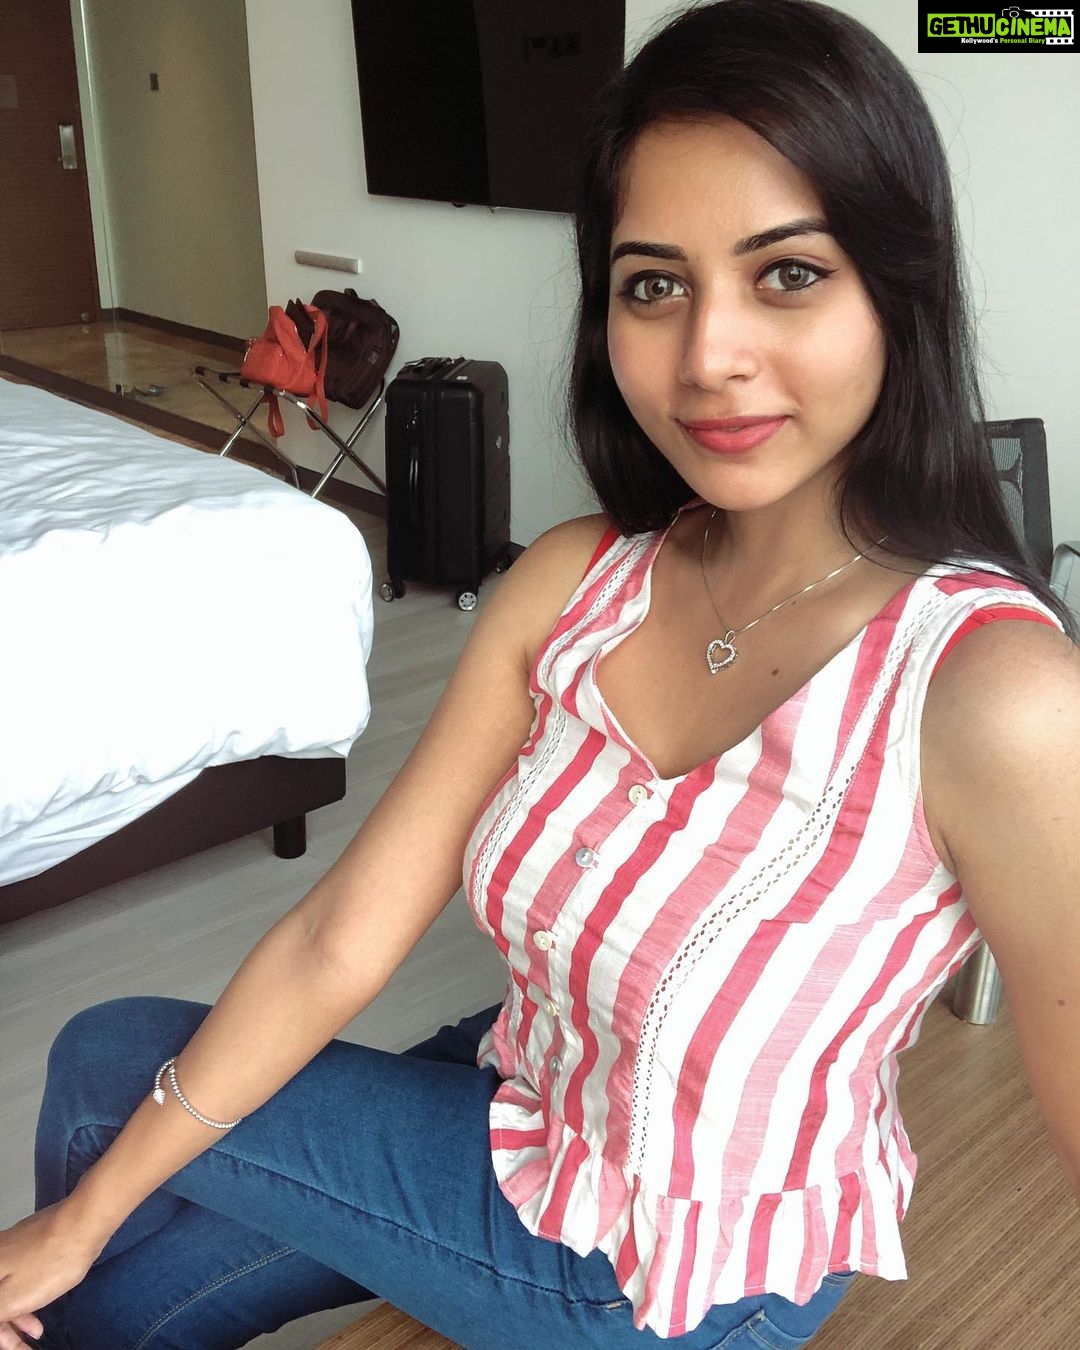 Suza Kumar - 20.8K Likes - Most Liked Instagram Photos